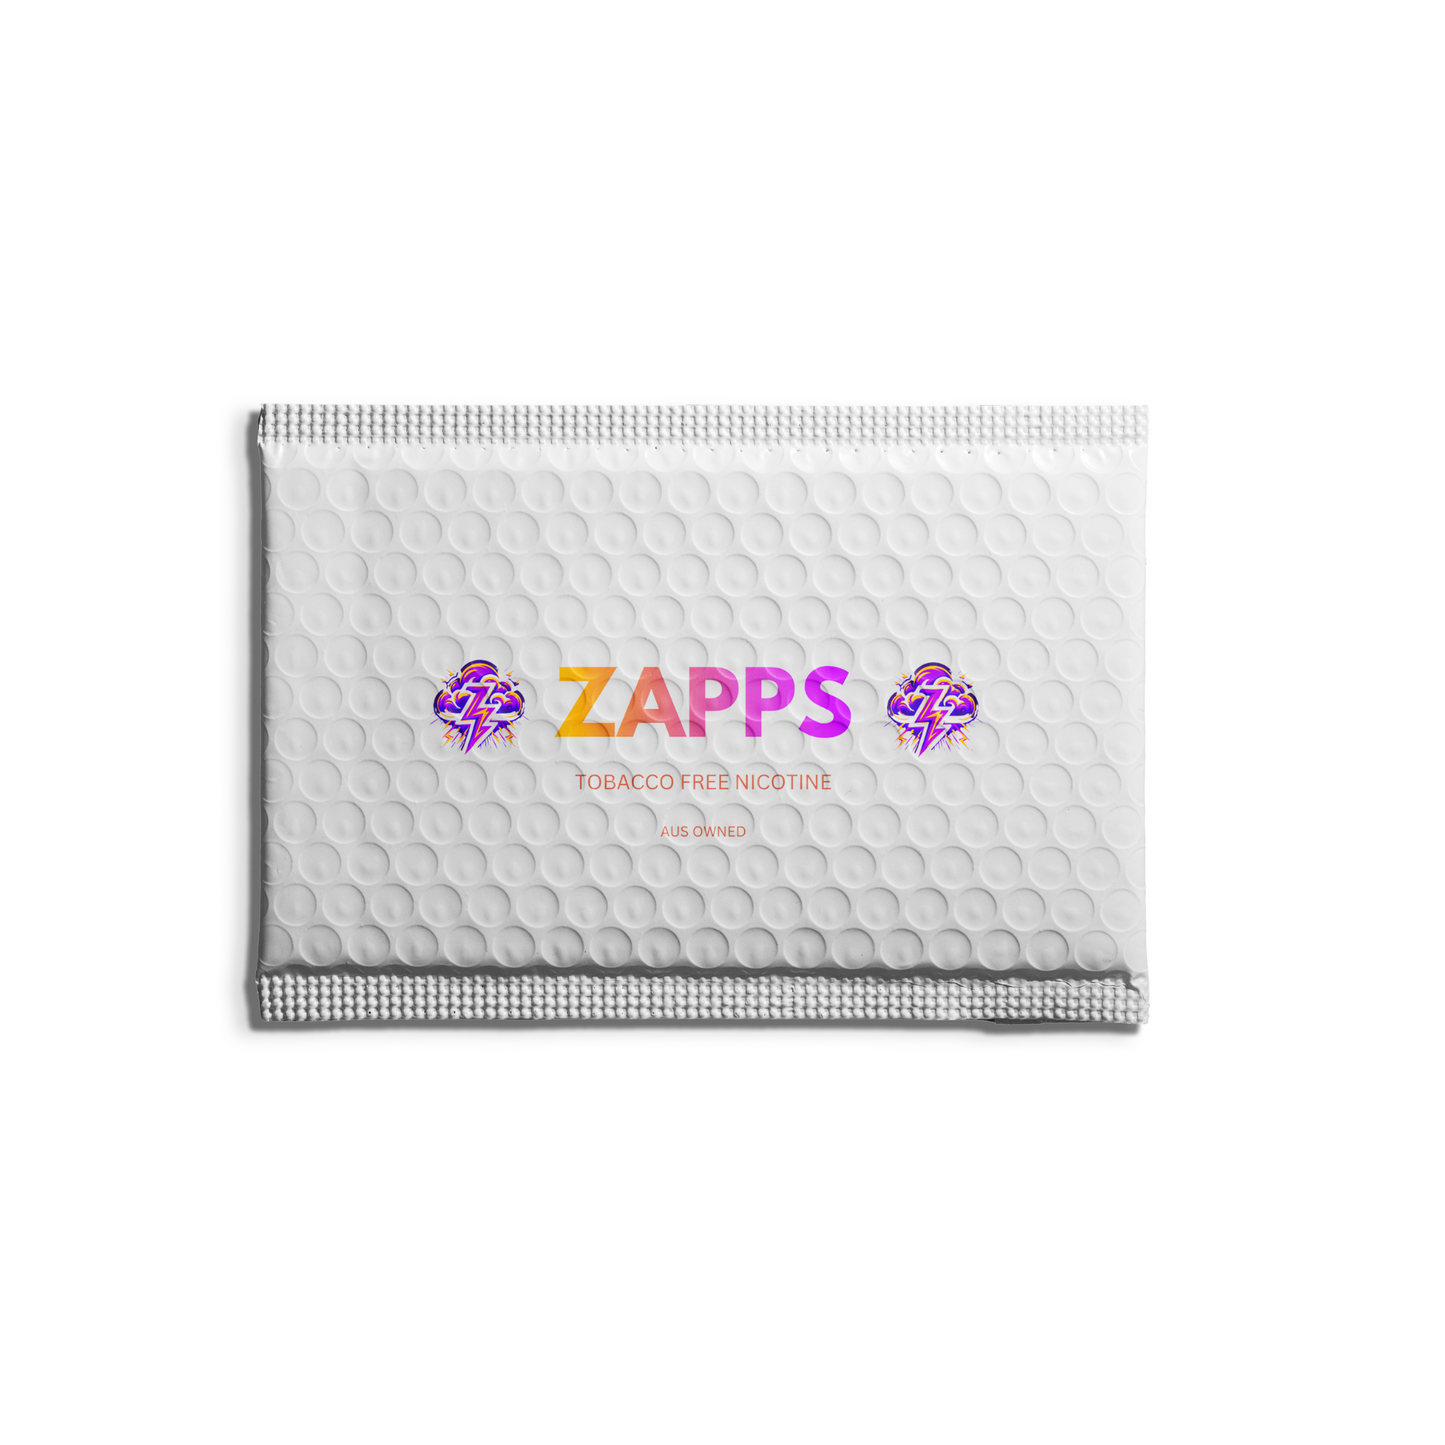 ZAPP - Energy Drink (14mg)